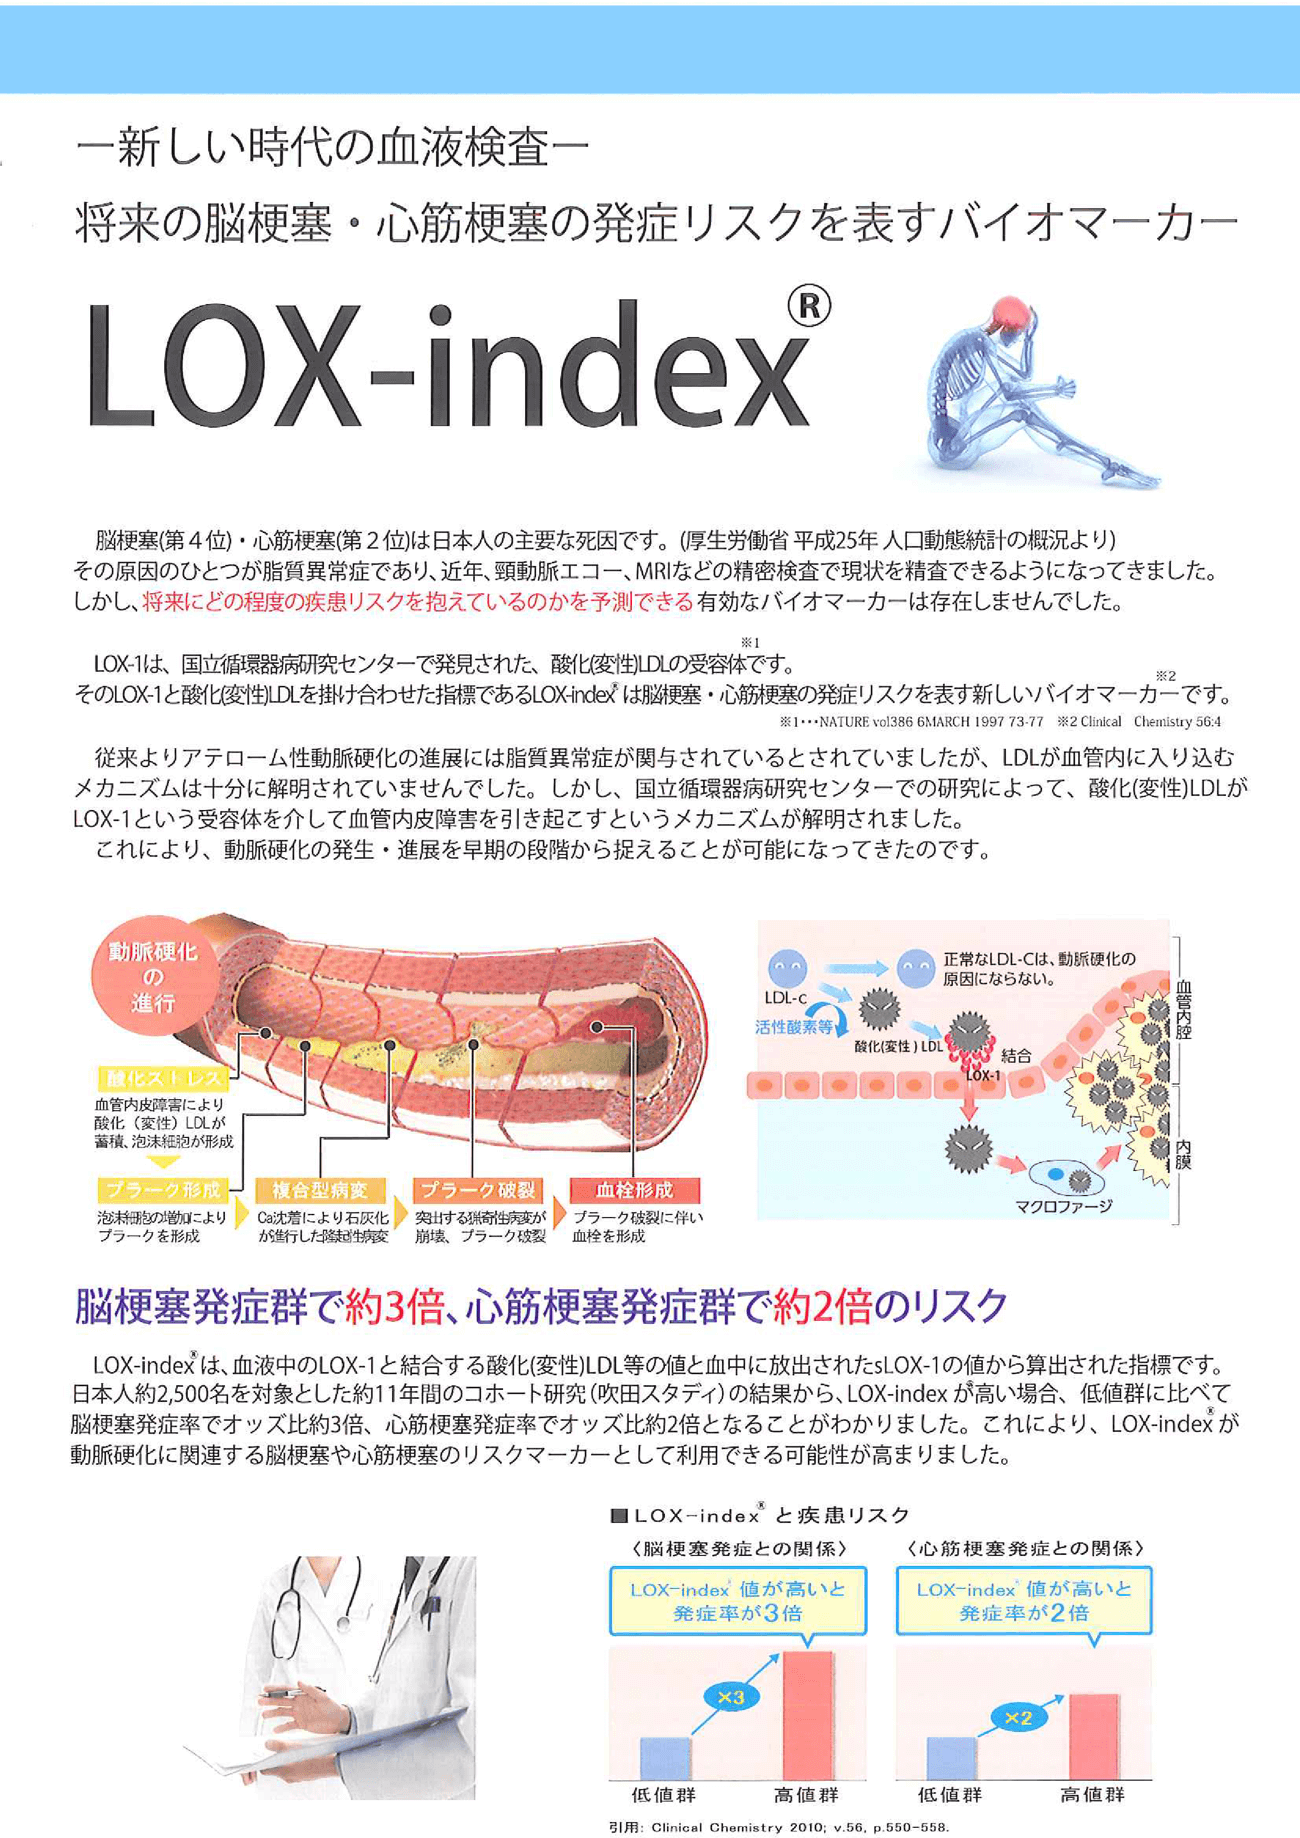 LOX-index説明チラシ